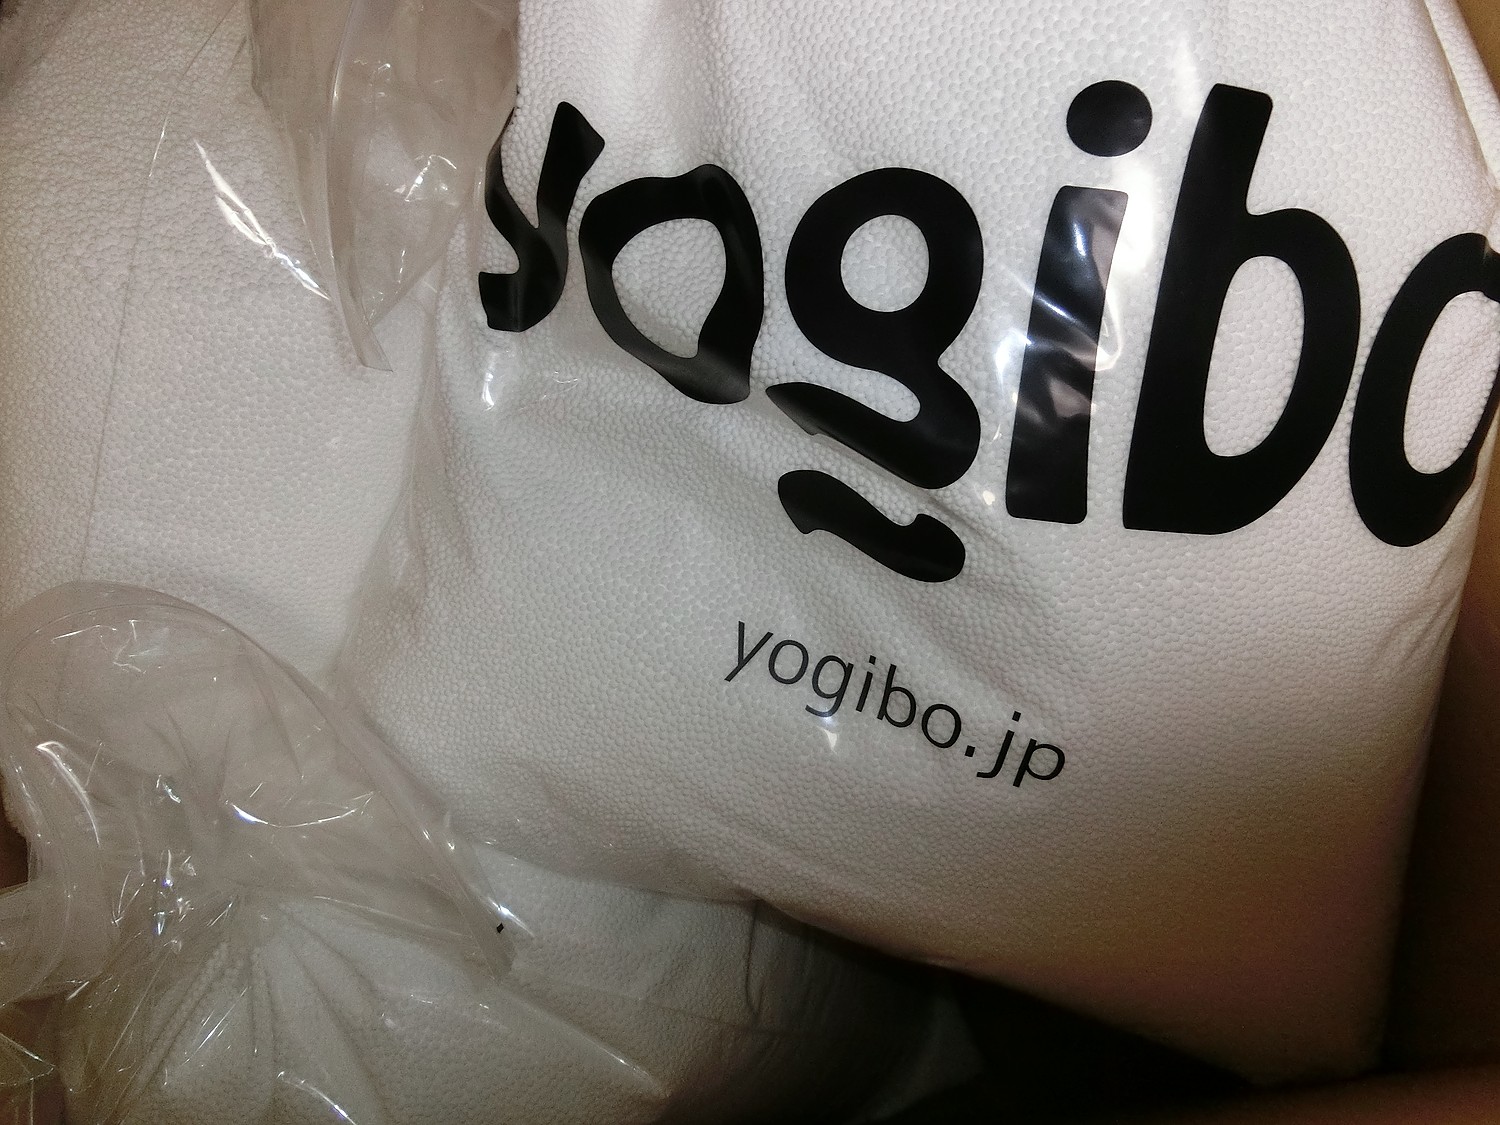 楽天市場】【10%OFF】Yogibo / ヨギボー 補充ビーズ（3000g / 174L）【ビーズクッション 補充 補充用ビーズ】【8/1(月)8:59まで】(Yogibo公式ストア楽天市場店)(未購入を含む)  | みんなのレビュー・口コミ